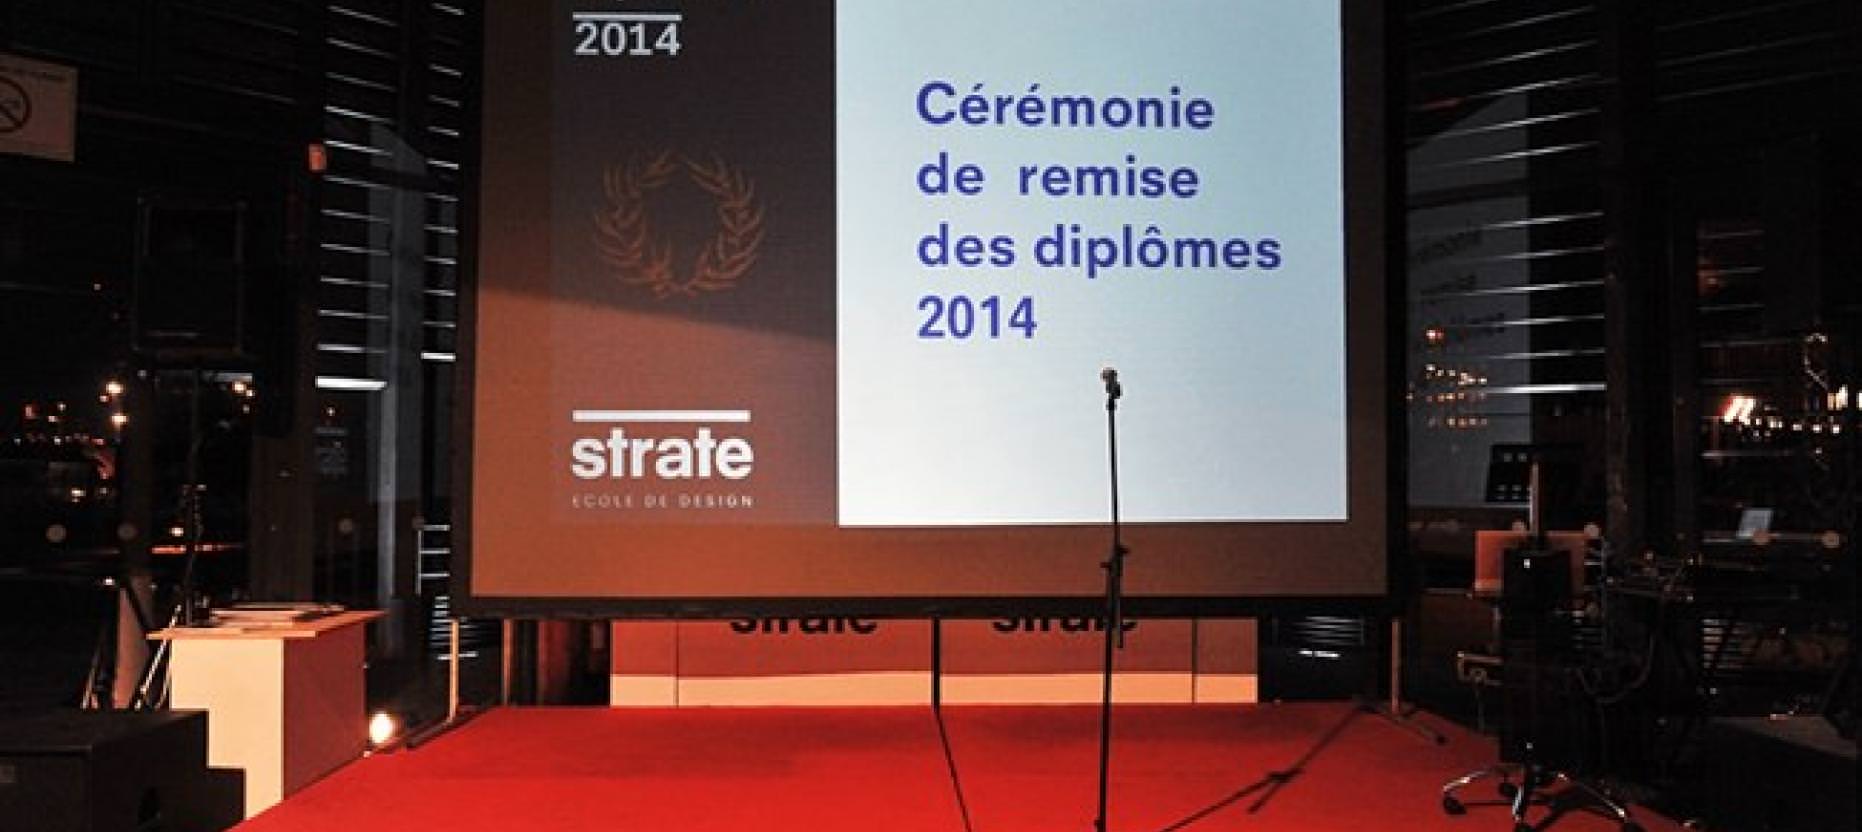 Strate, cérémonie de remise de diplôme 2014